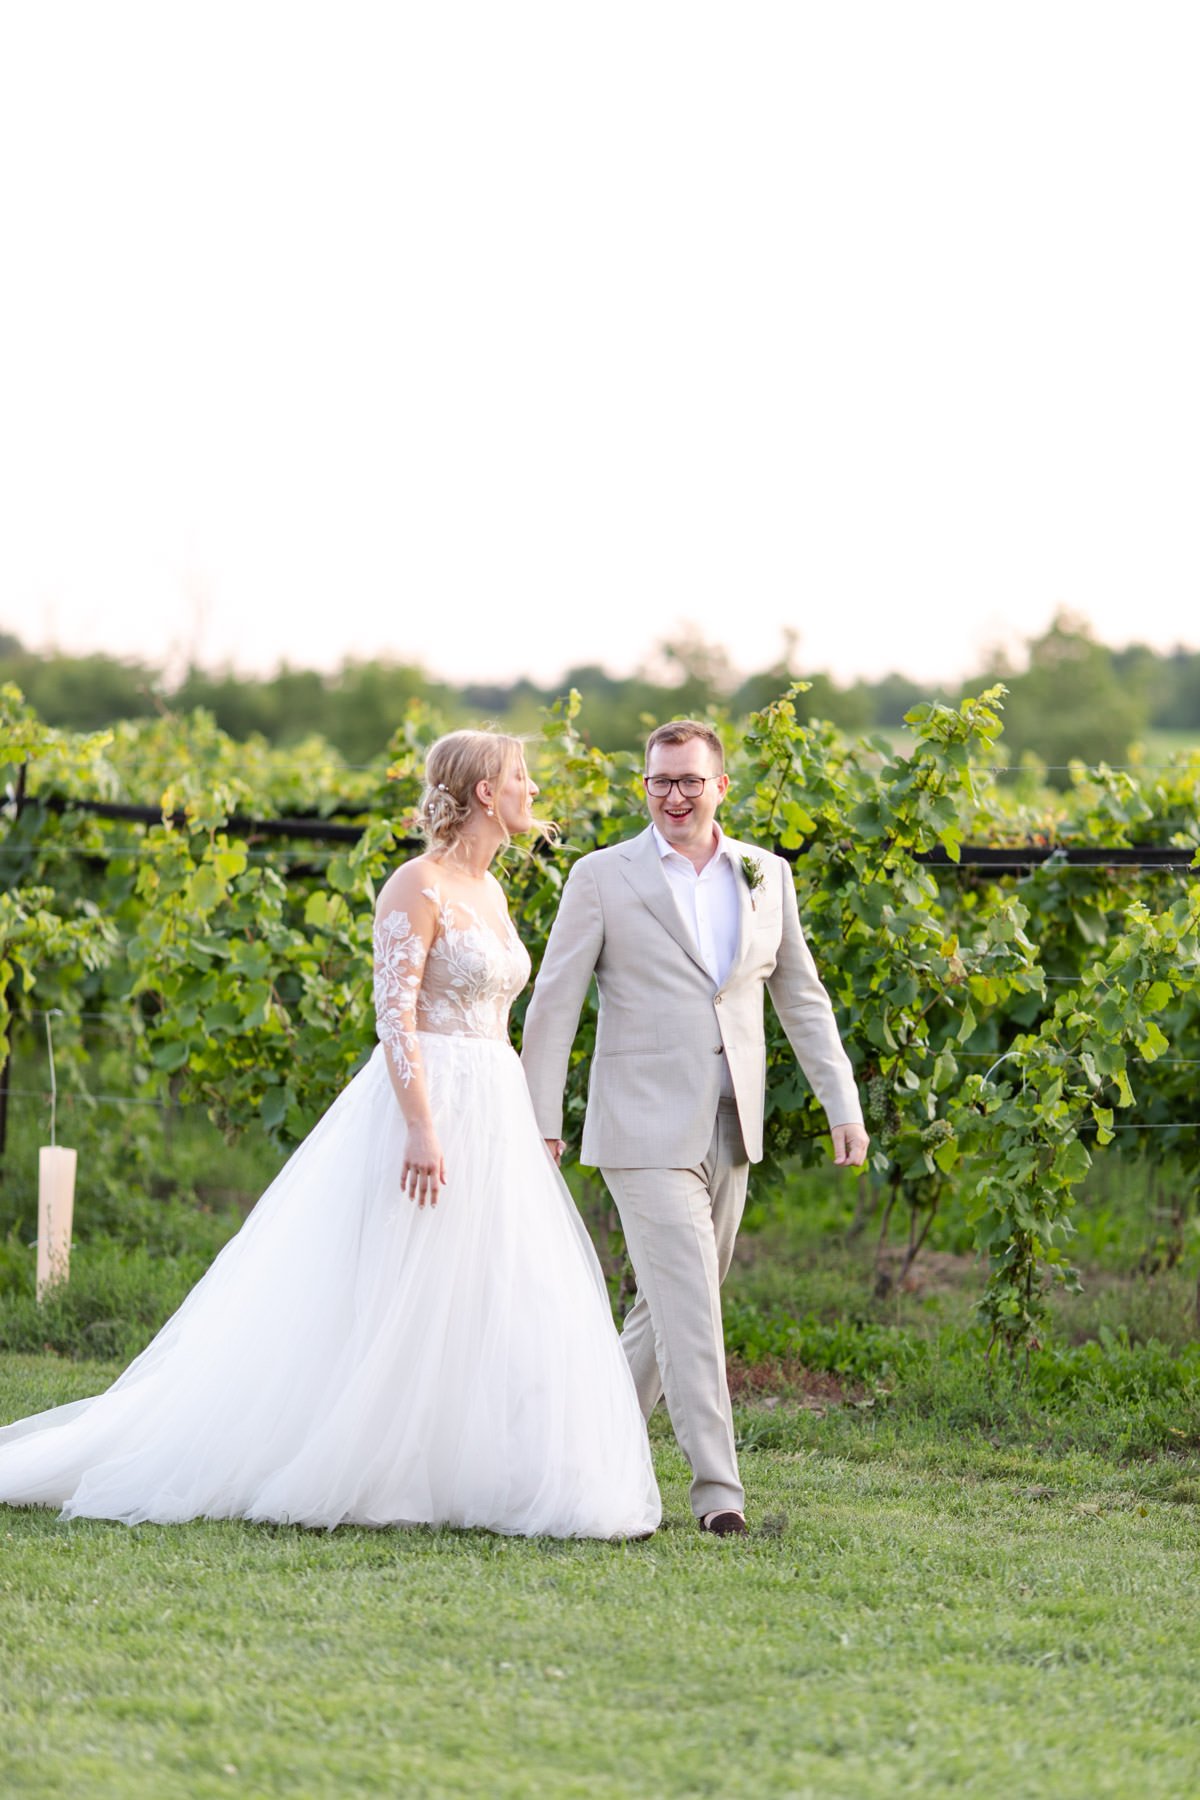 Calamus-Winery-Wedding-Vineyard-Bride-Photo-by-Philosophy-Studios-086.JPG